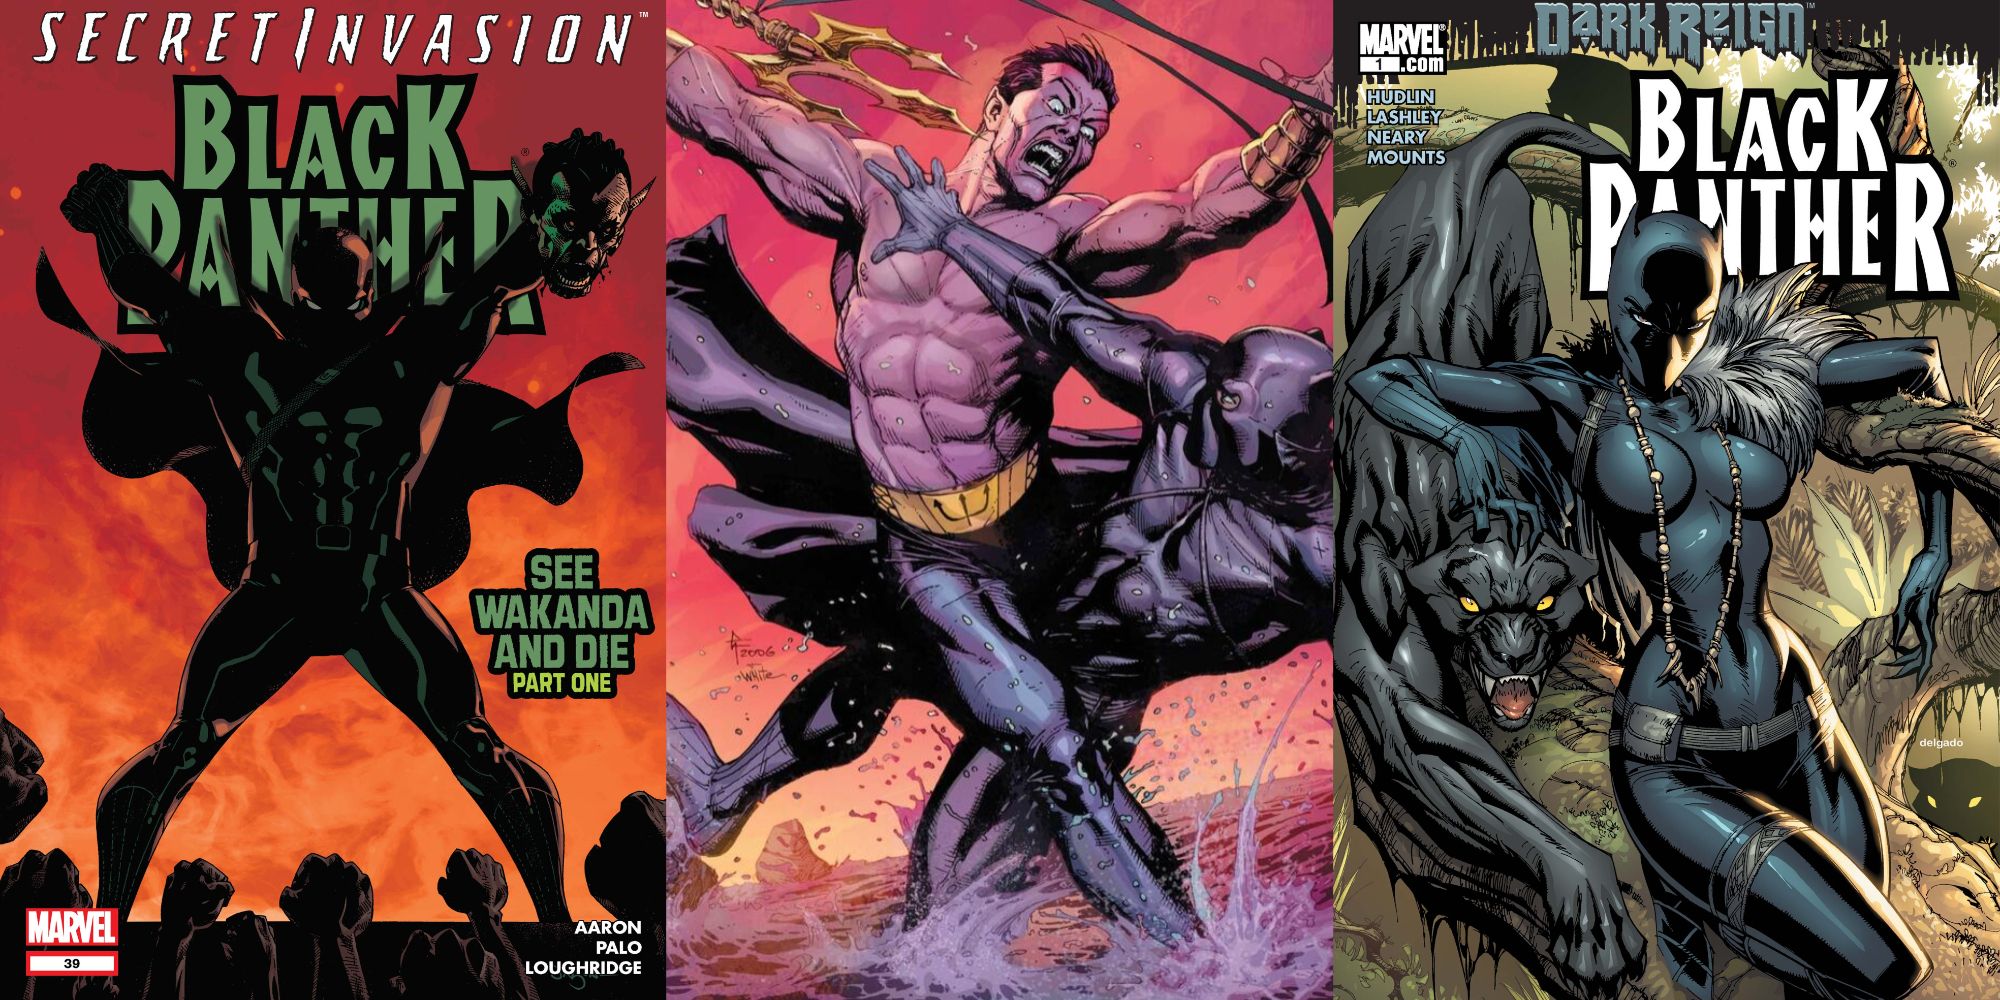 Split image of Black Panther #39, Namor fighting Black Panther, and Black Panther #1 (2009) with Shuri as Black Panther.